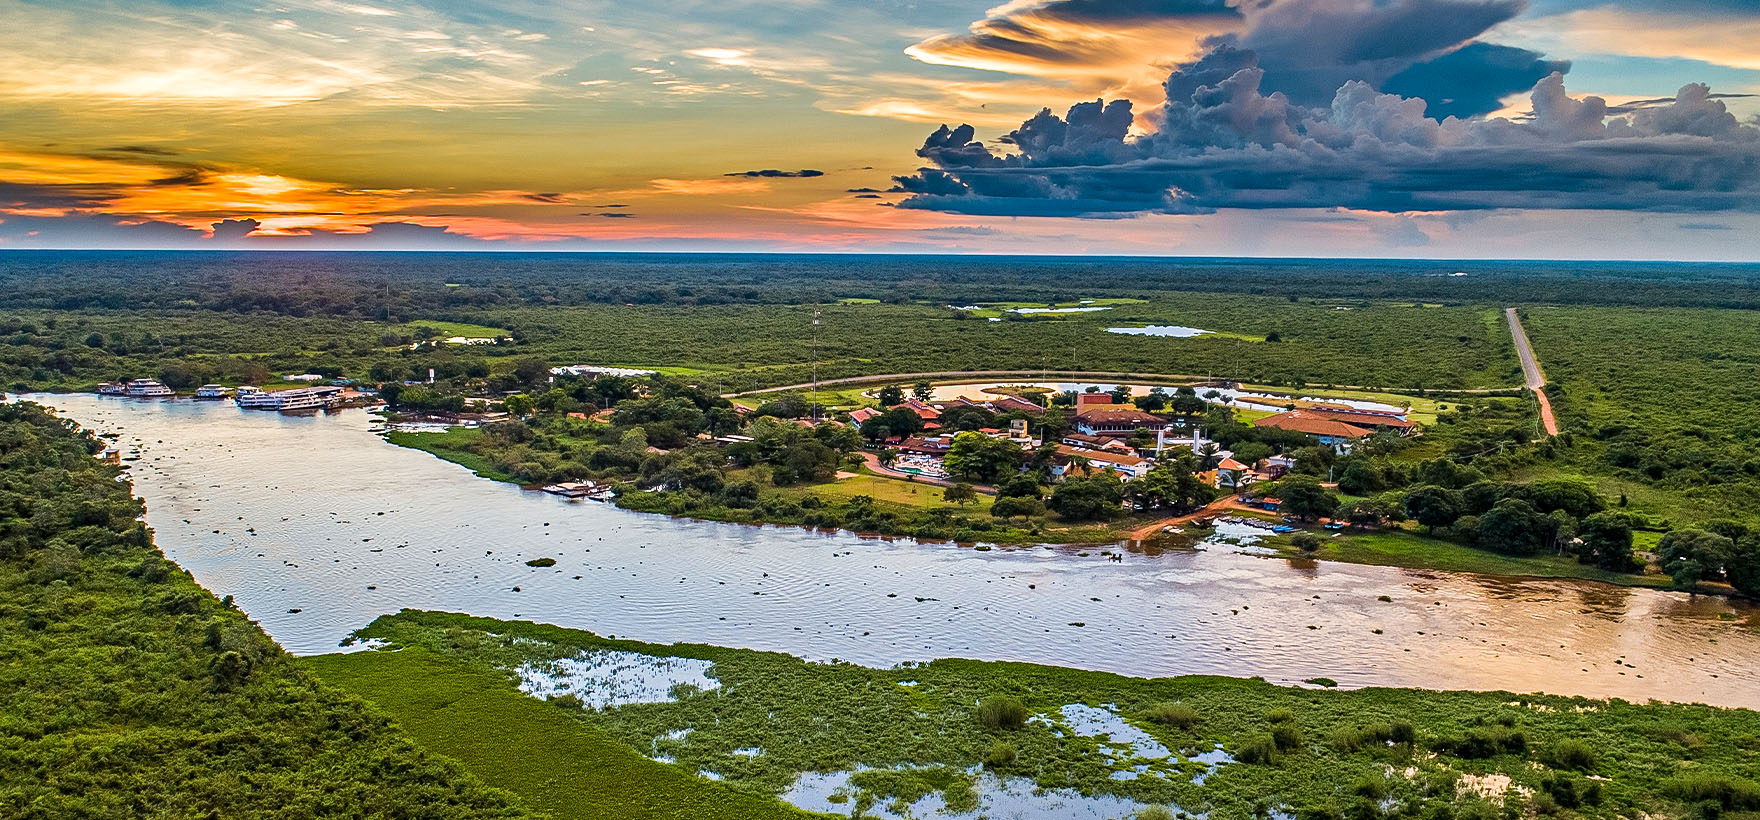 Turismo - Mato Grosso - FIT Pantanal - ABAV - América Latina